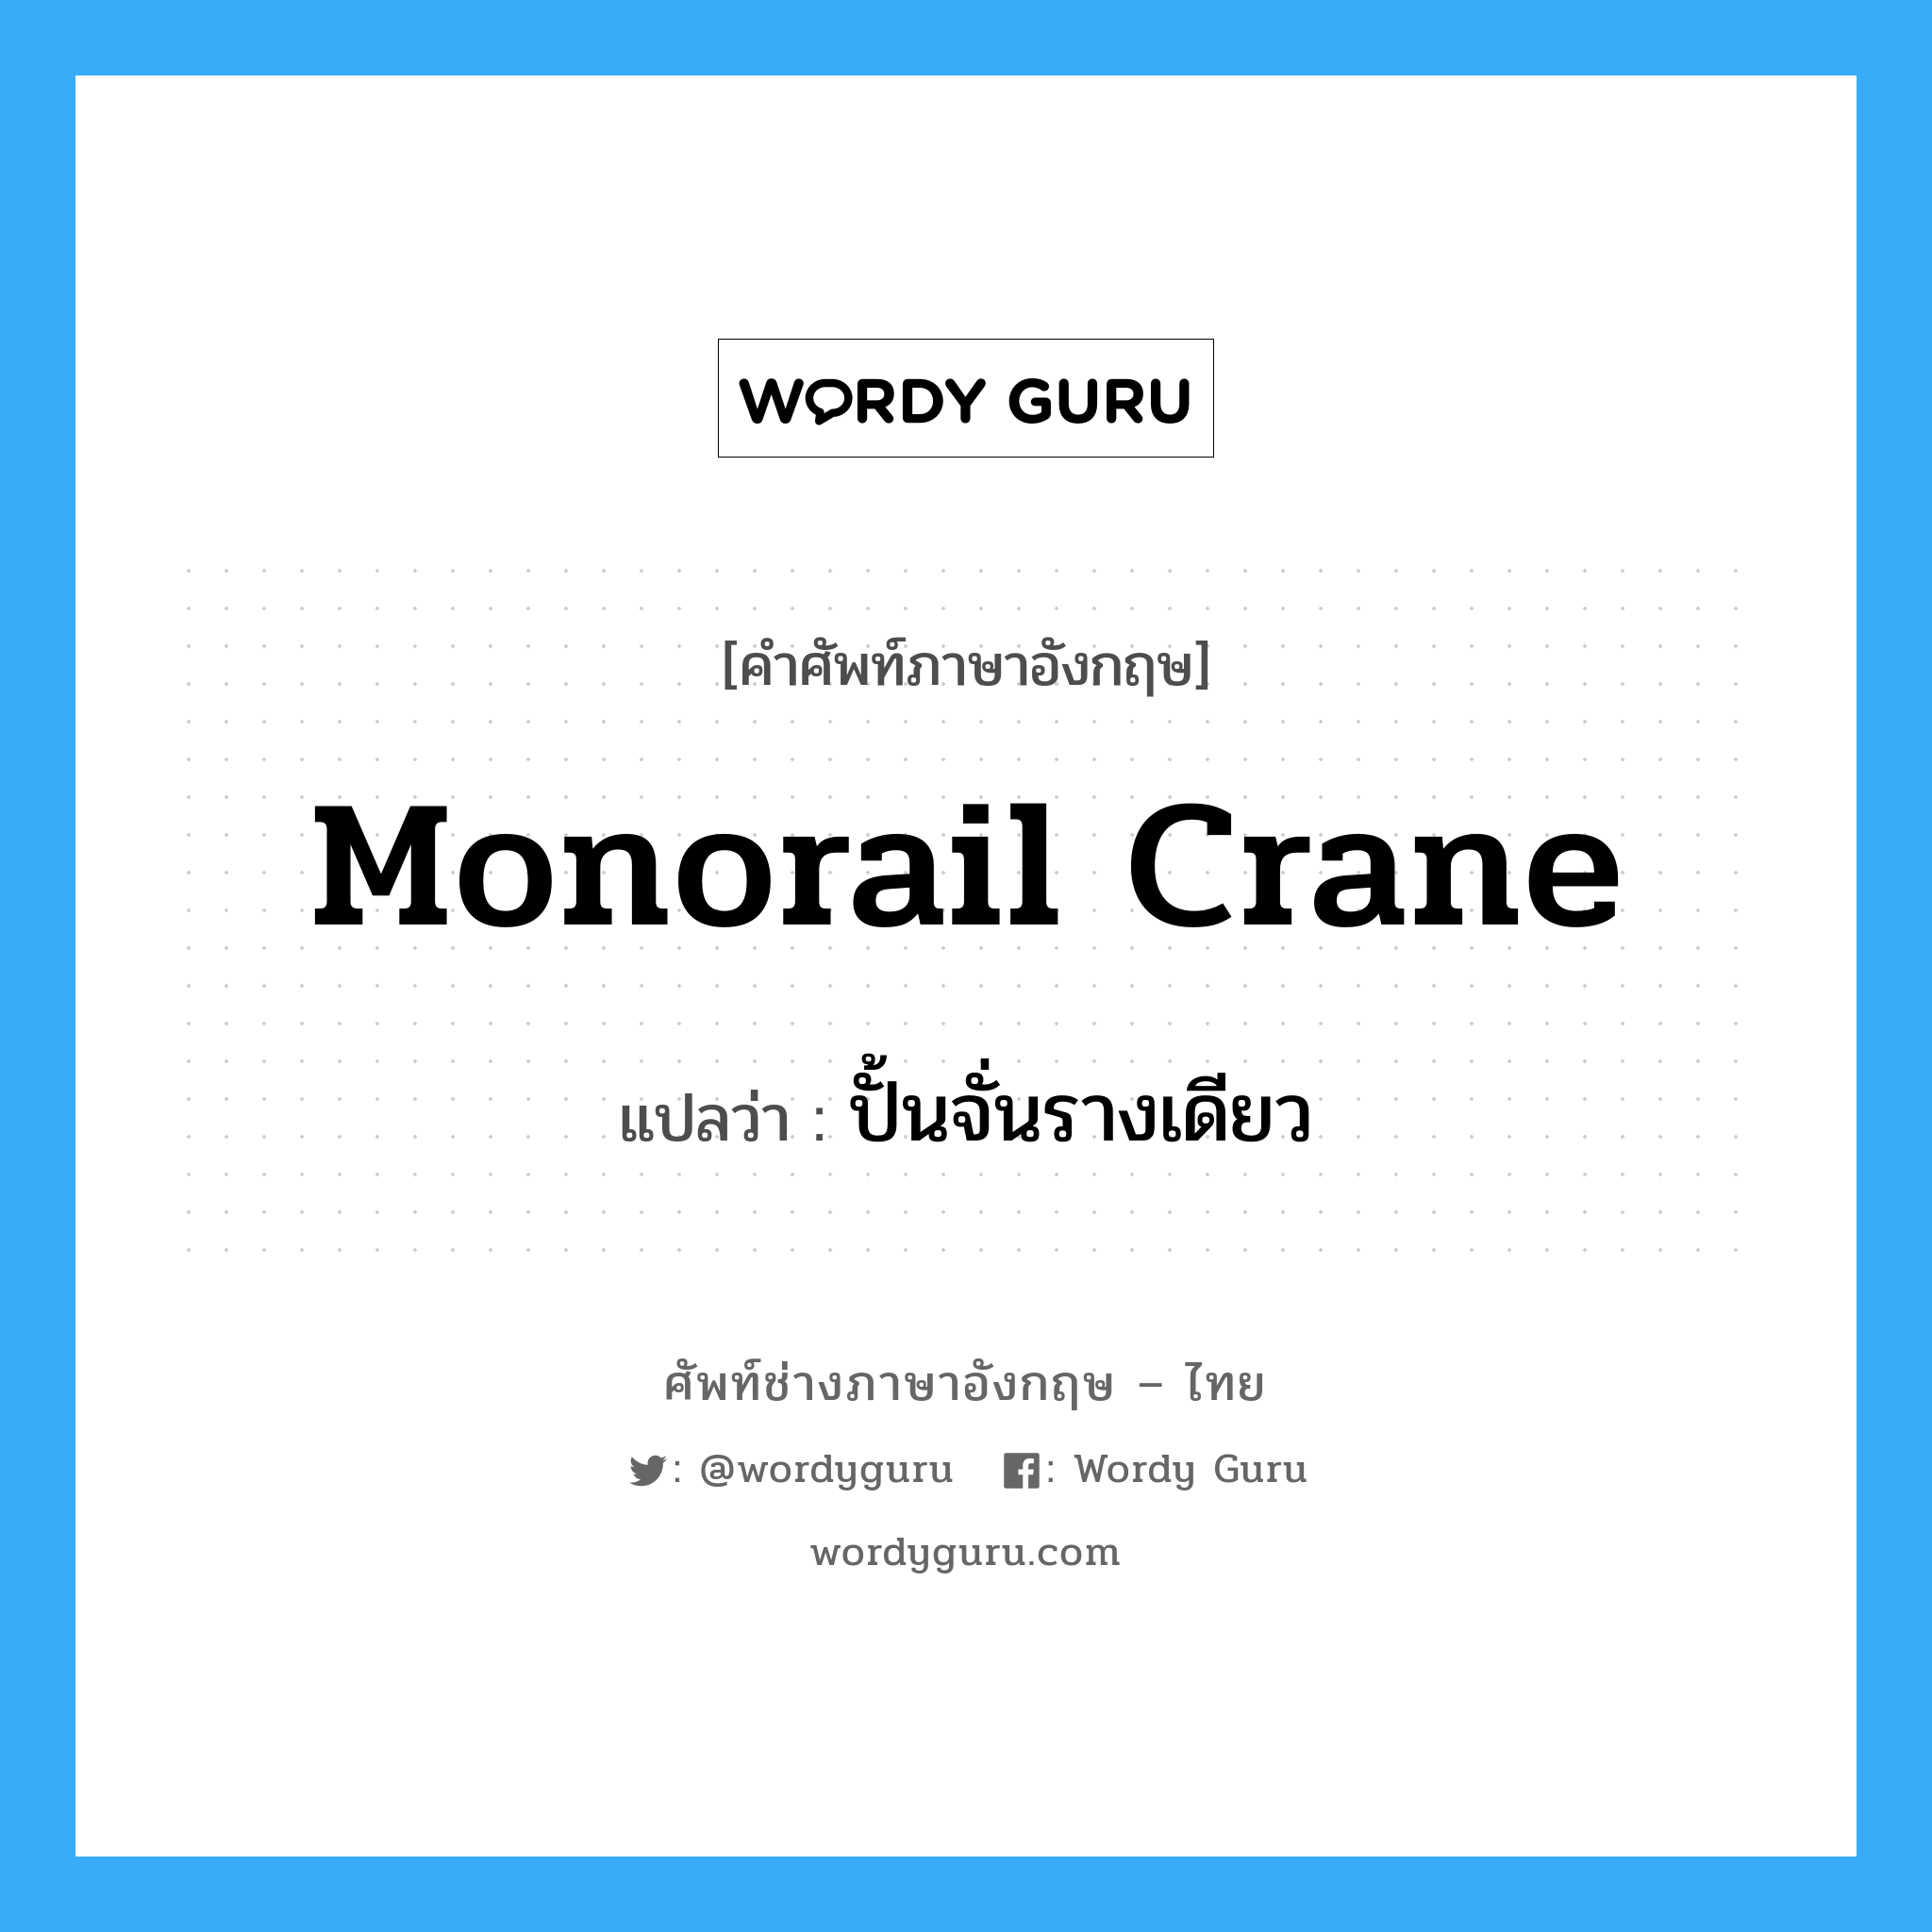 ปั้นจั่นรางเดียว ภาษาอังกฤษ?, คำศัพท์ช่างภาษาอังกฤษ - ไทย ปั้นจั่นรางเดียว คำศัพท์ภาษาอังกฤษ ปั้นจั่นรางเดียว แปลว่า monorail crane